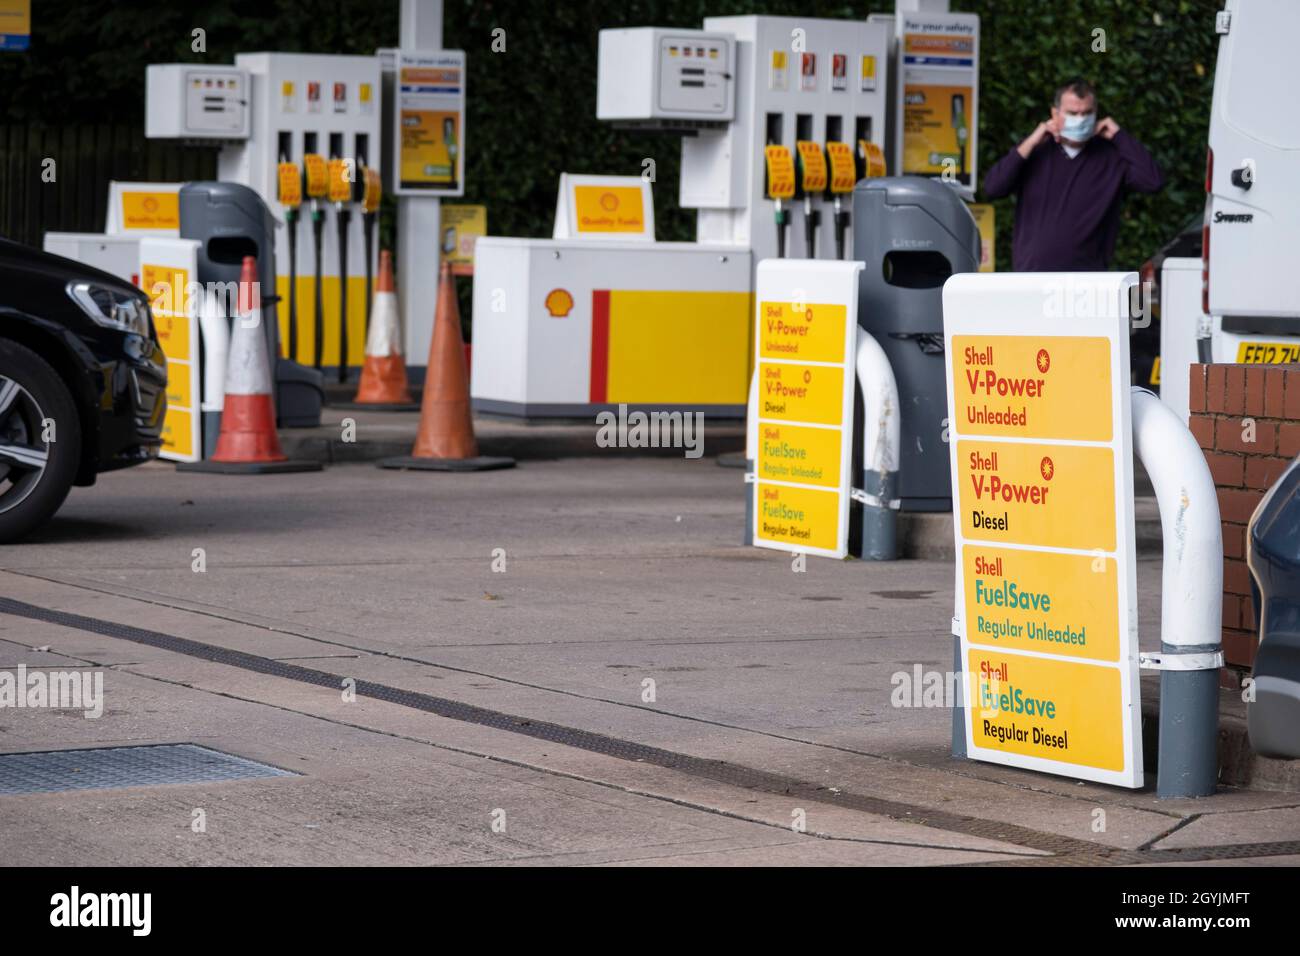 Mentre la crisi del carburante nel Regno Unito continua, questa stazione di benzina Shell è aperta alle imprese, e gli automobilisti guidano con le loro auto per riempire di carburante, che viene venduto a prezzi normali il 29 settembre 2021 a Birmingham, Regno Unito. Mentre alcune previsioni rimangono chiuse con poco o nessun combustibile, ci è confusione fra il pubblico quanto a se dovrebbero comprare il combustibile ora o attendere. Ciò ha portato ad acquisti di panico e lunghe code fuori da alcune stazioni di benzina, mentre la crisi, causata dalla mancanza di conducenti di HGV disponibili per la consegna di forniture, continua. Foto Stock